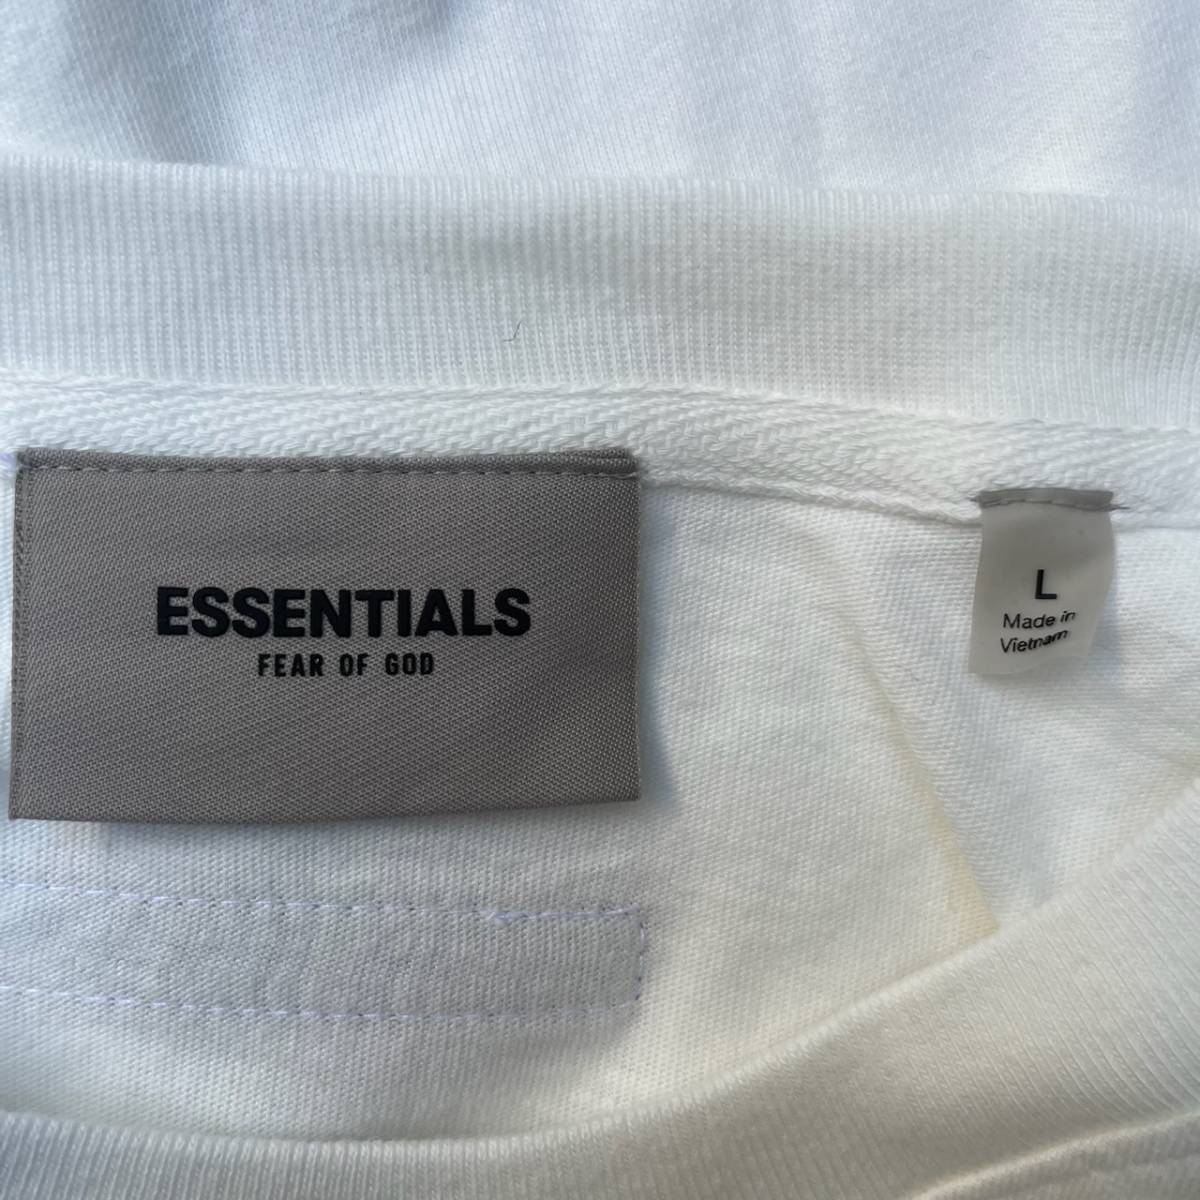 新品 FOG Fear Of God Essentials フィアオブゴッド エッセンシャルズ Lサイズ LOGO Tシャツ WHITE ホワイト